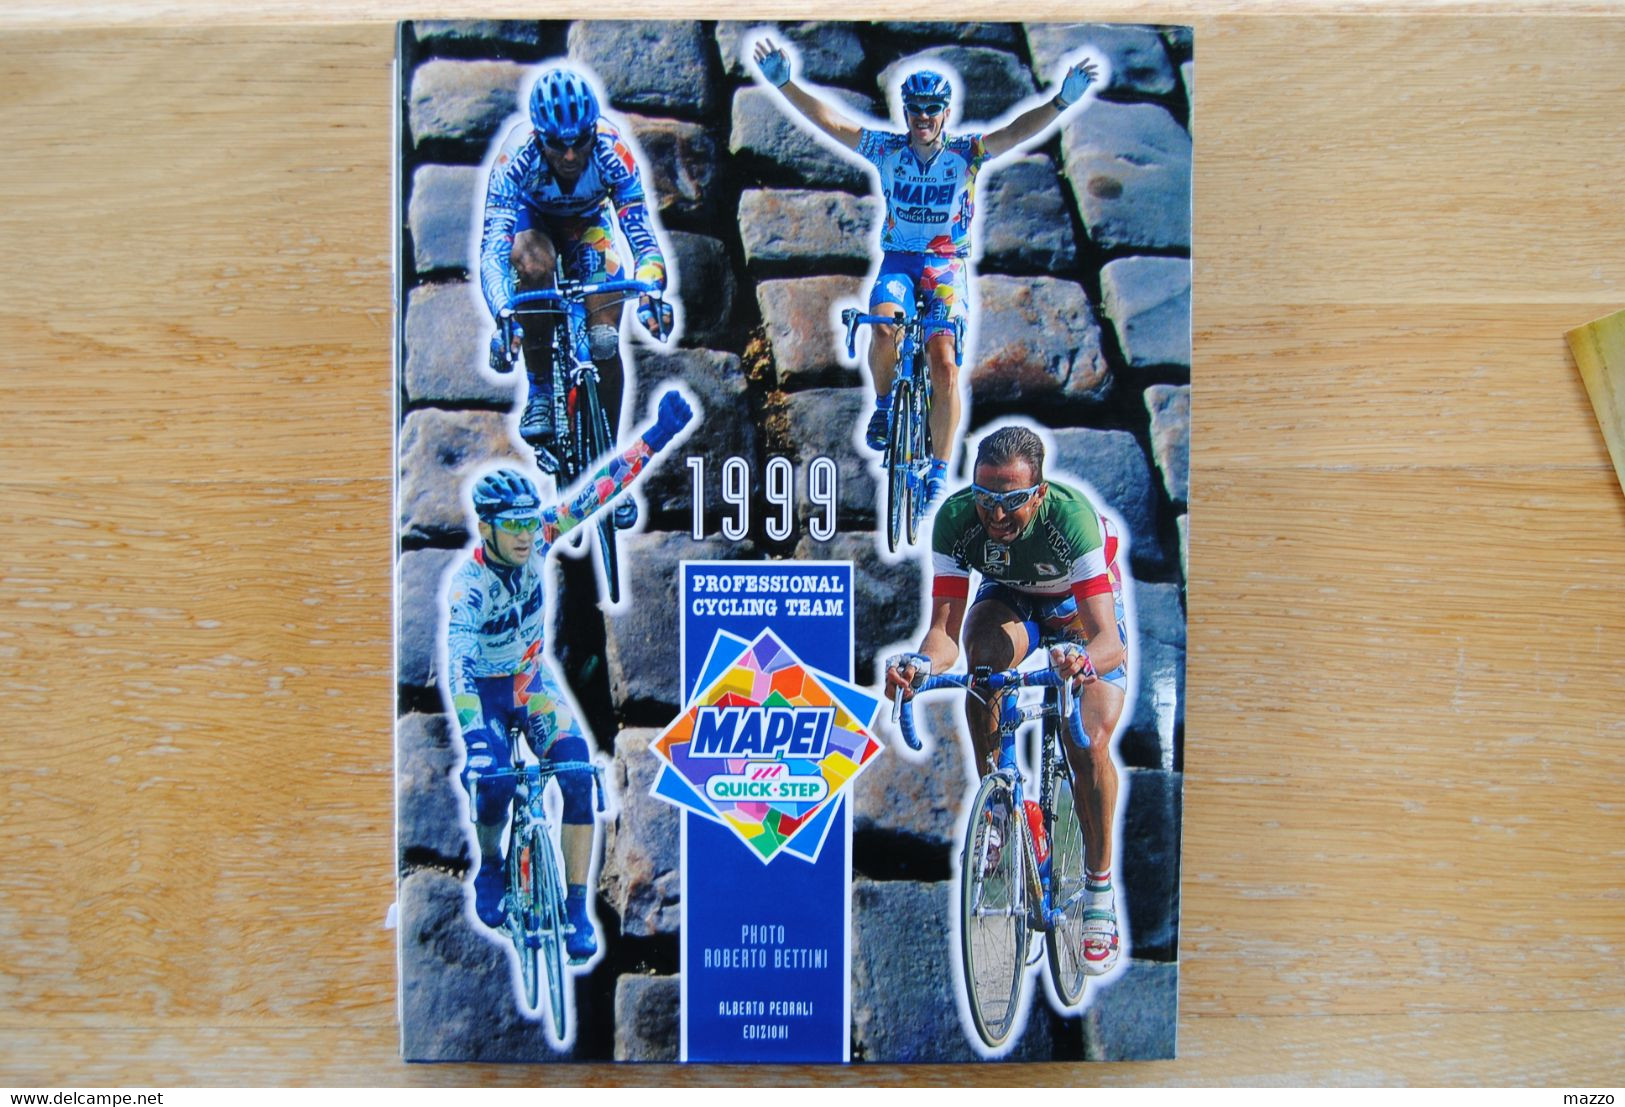 4812/MAPEI § QUICK STEP-Pro Cycling Team 1999-Photo Roberto BETTINI-ALBERTO PEDRALI EDIZIONI - Collections